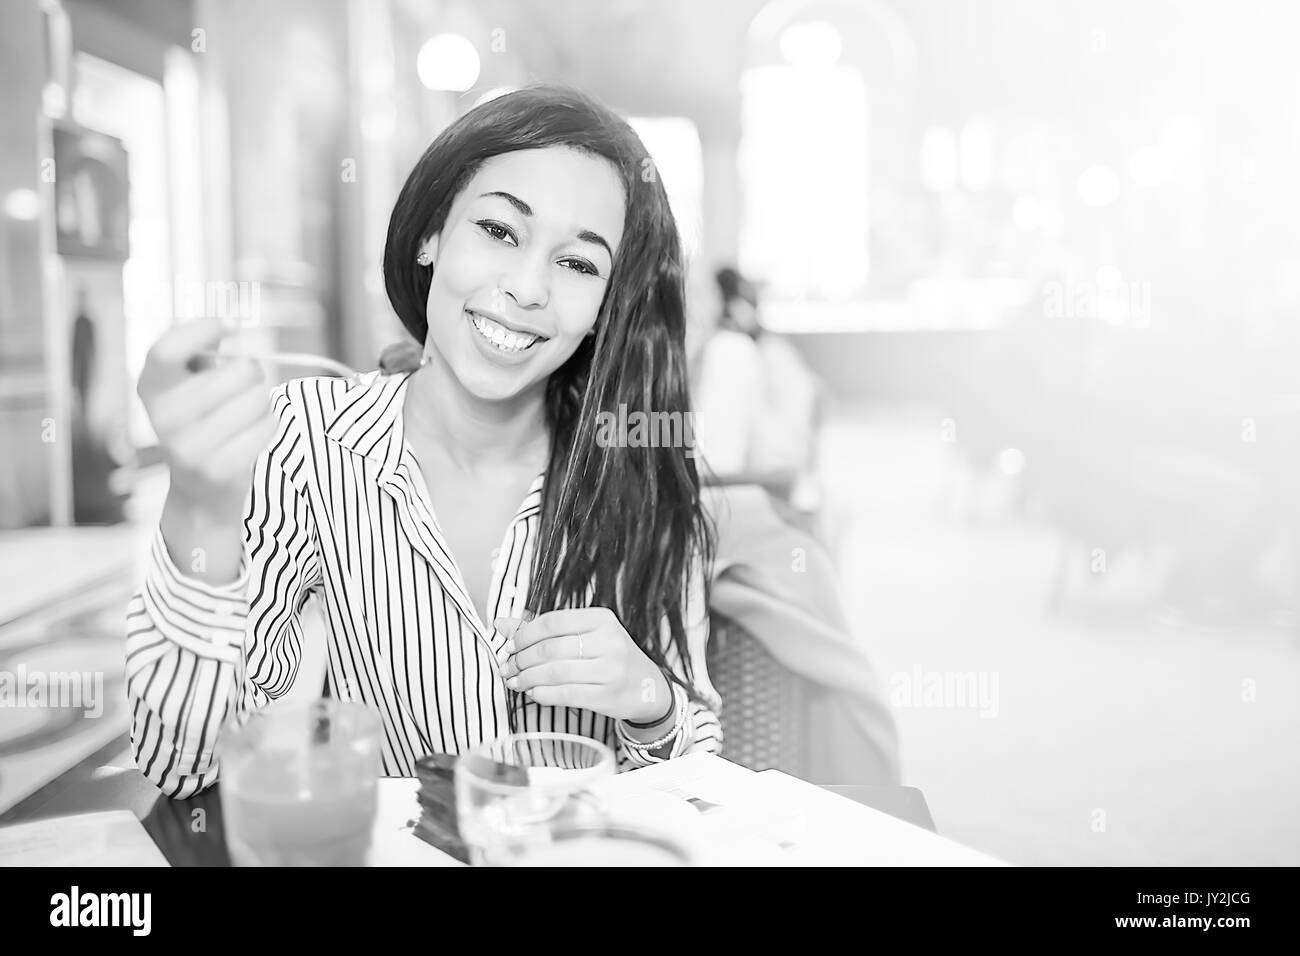 Bruna giovane donna con capelli lunghi cercando di fotocamera e sorridere mentre mangiando cioccolato torta nella caffetteria. Foto Stock